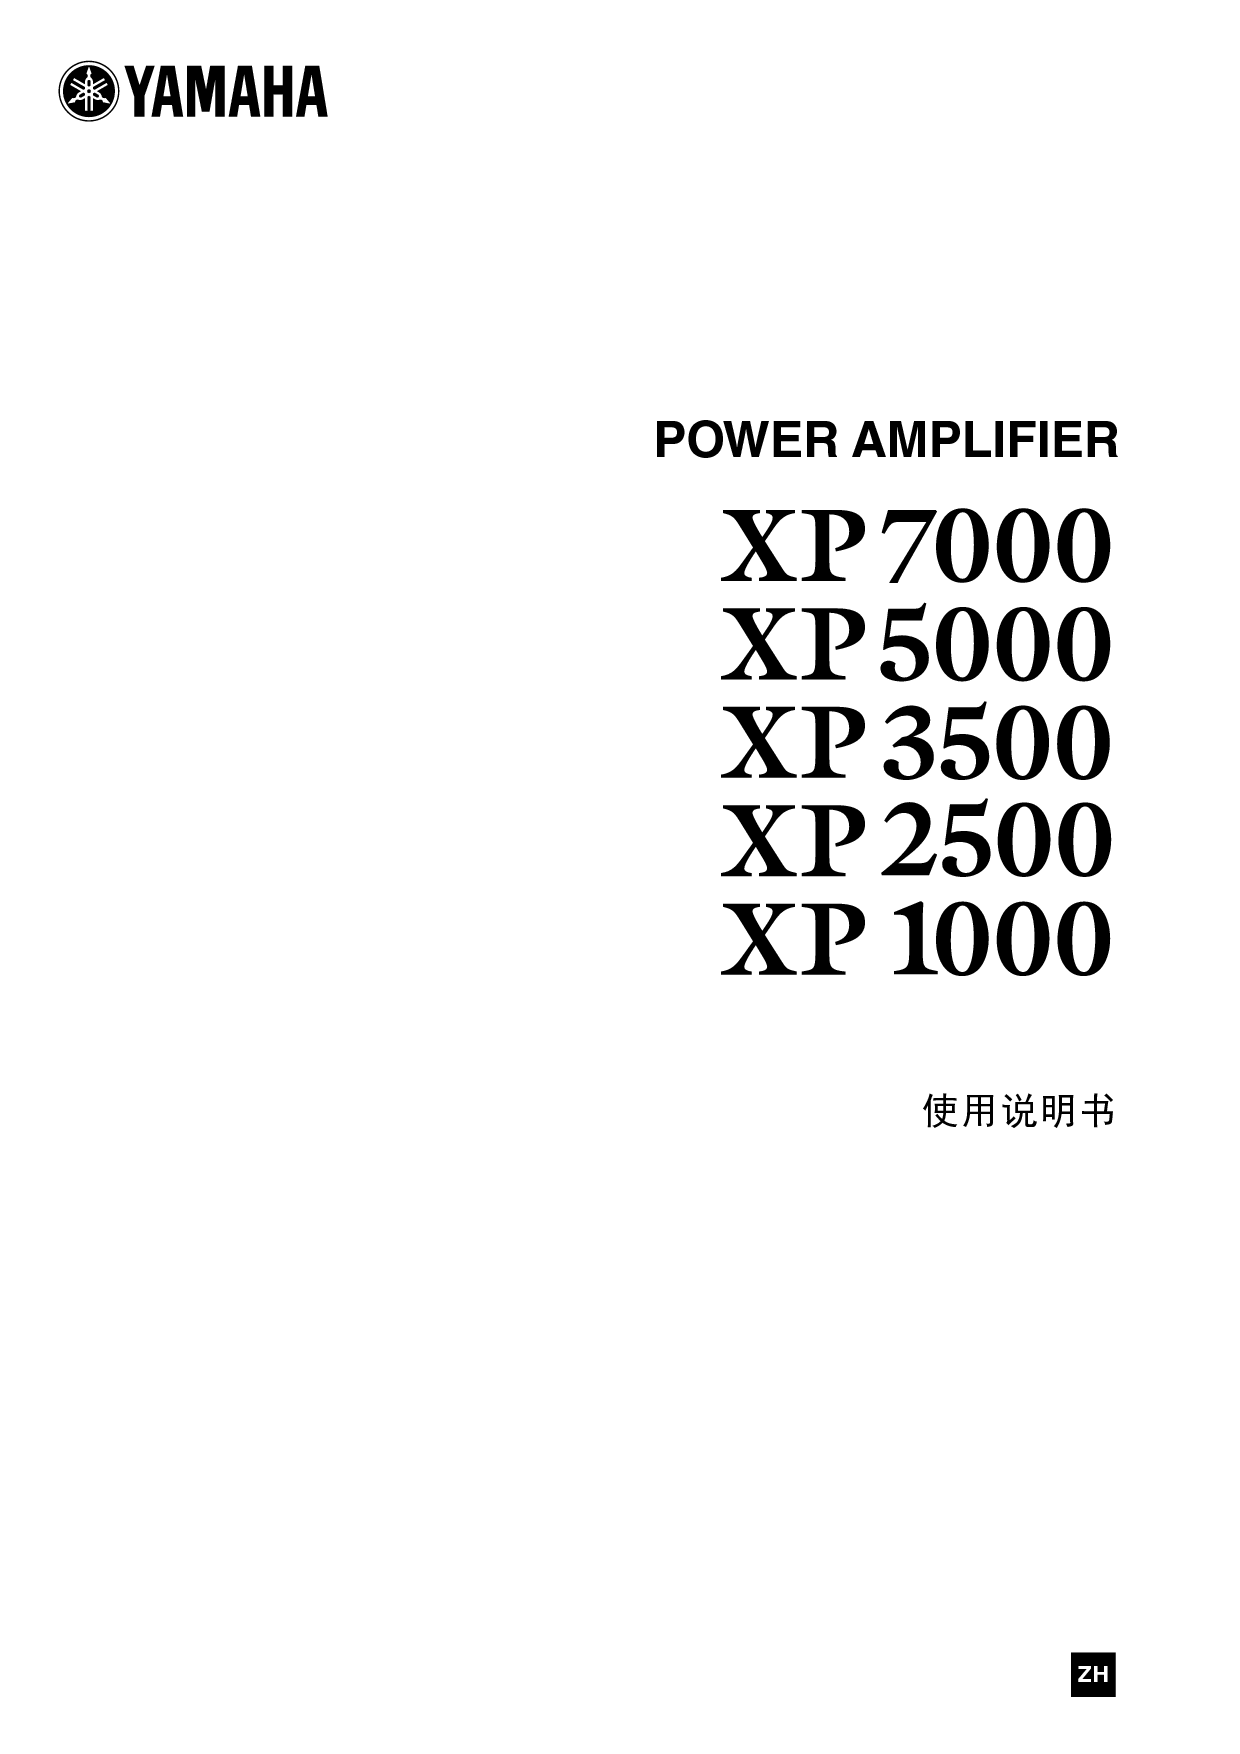 雅马哈 Yamaha XP1000 使用说明书 封面